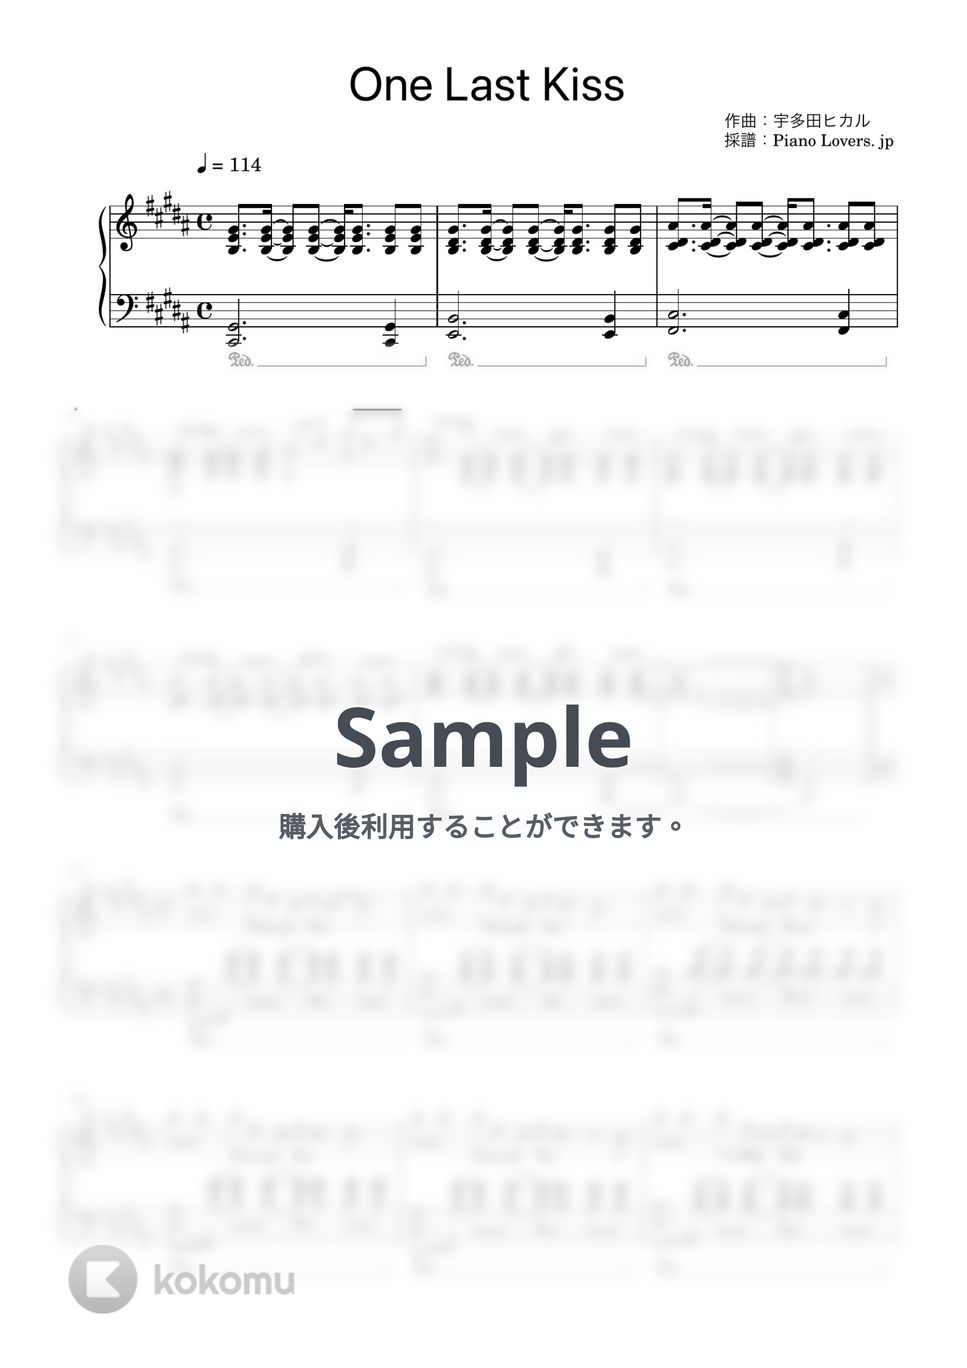 宇多田ヒカル - One Last Kiss (シン・エヴァンゲリオン / ピアノ楽譜 / 中級) by Piano Lovers. jp